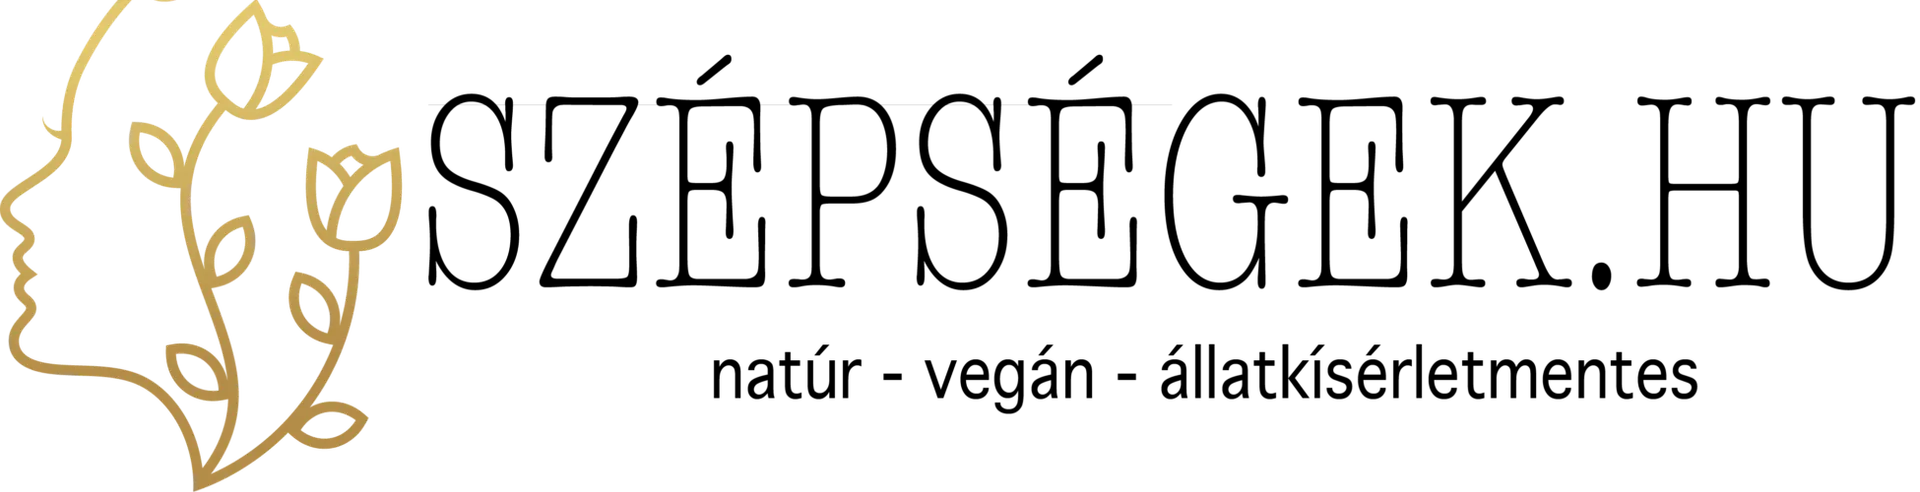 SZÉPSEGEK logo